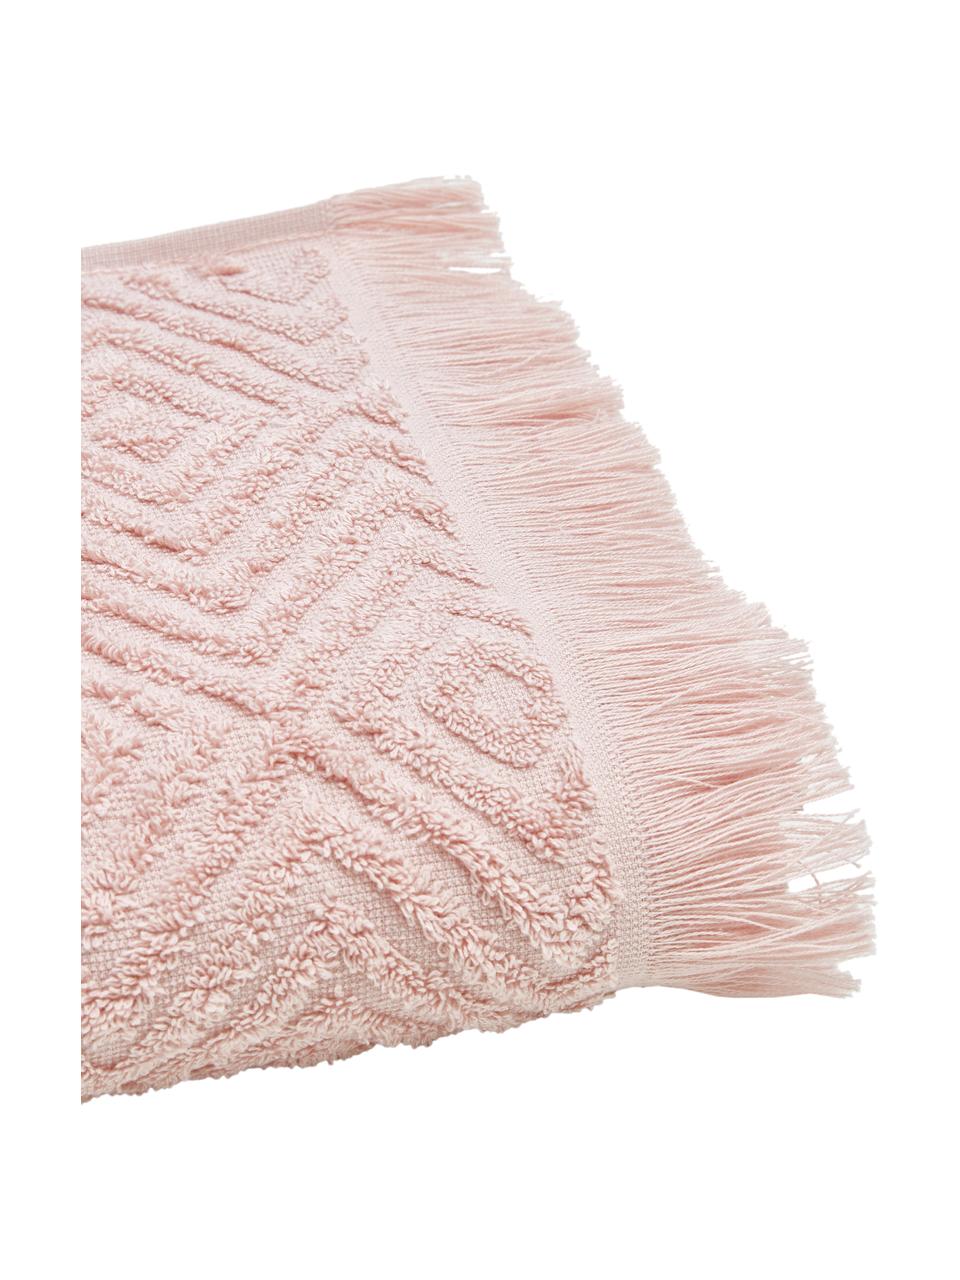 Handdoek Jacqui in verschillende formaten, met hoog-laag patroon, 100% katoen, middelzware kwaliteit, 490 g/m², Roze, Handdoek, B 50 x L 100 cm, 2 stuks